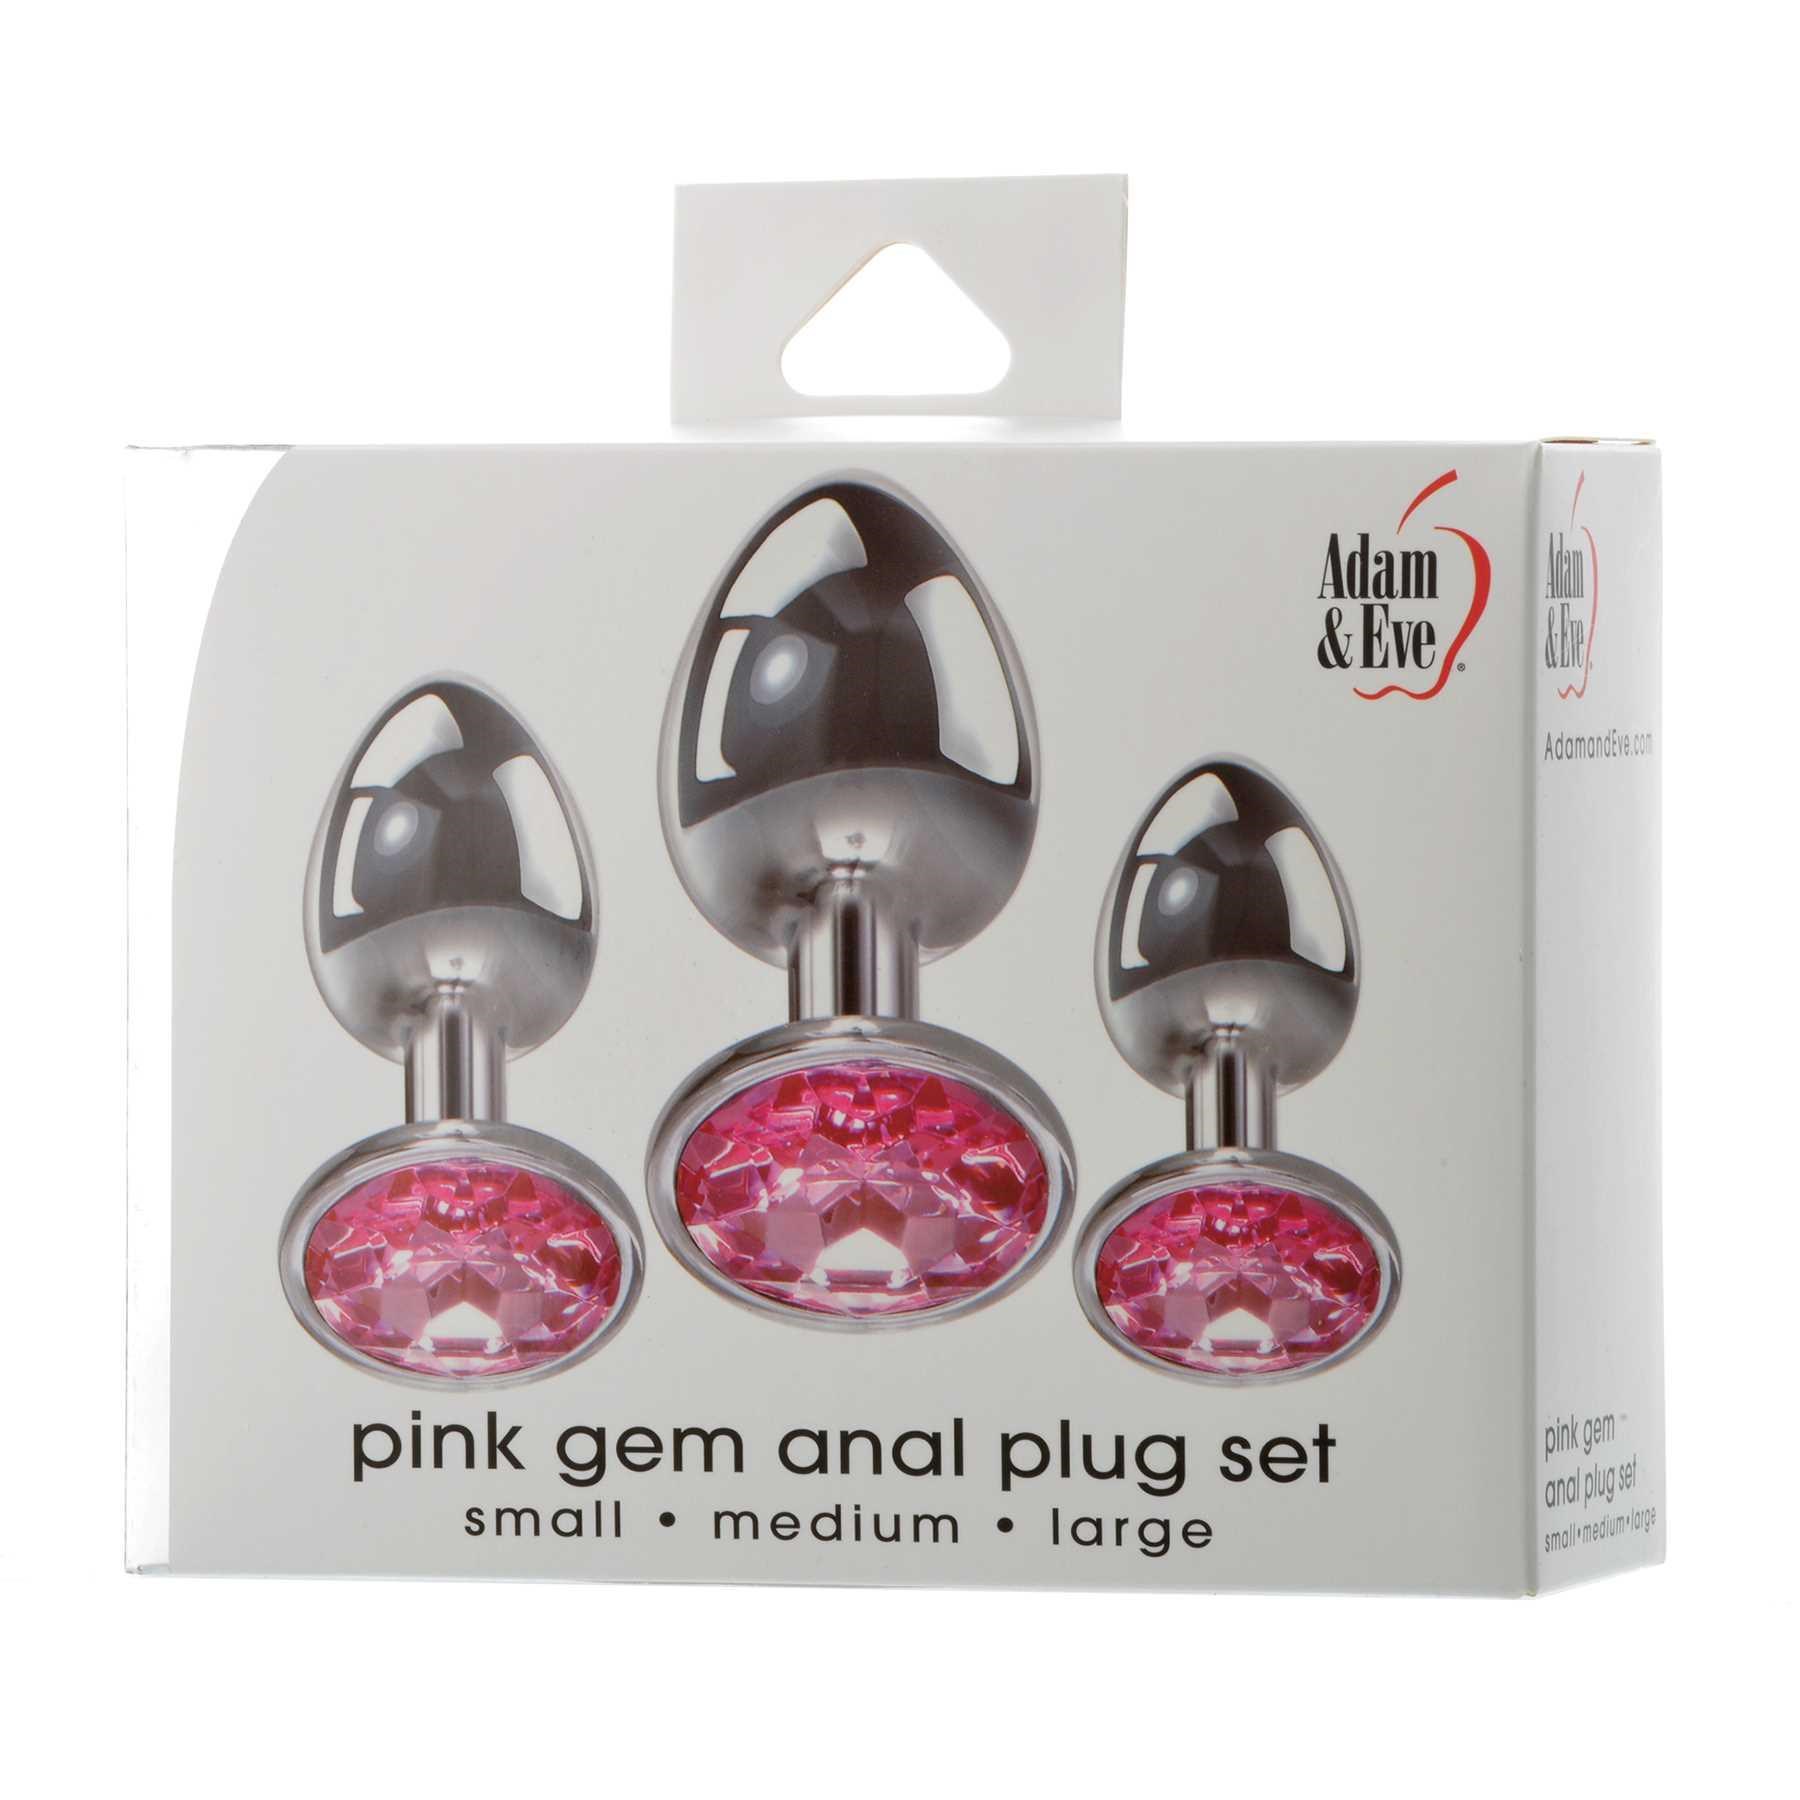 pink gem anal plug set box packaging